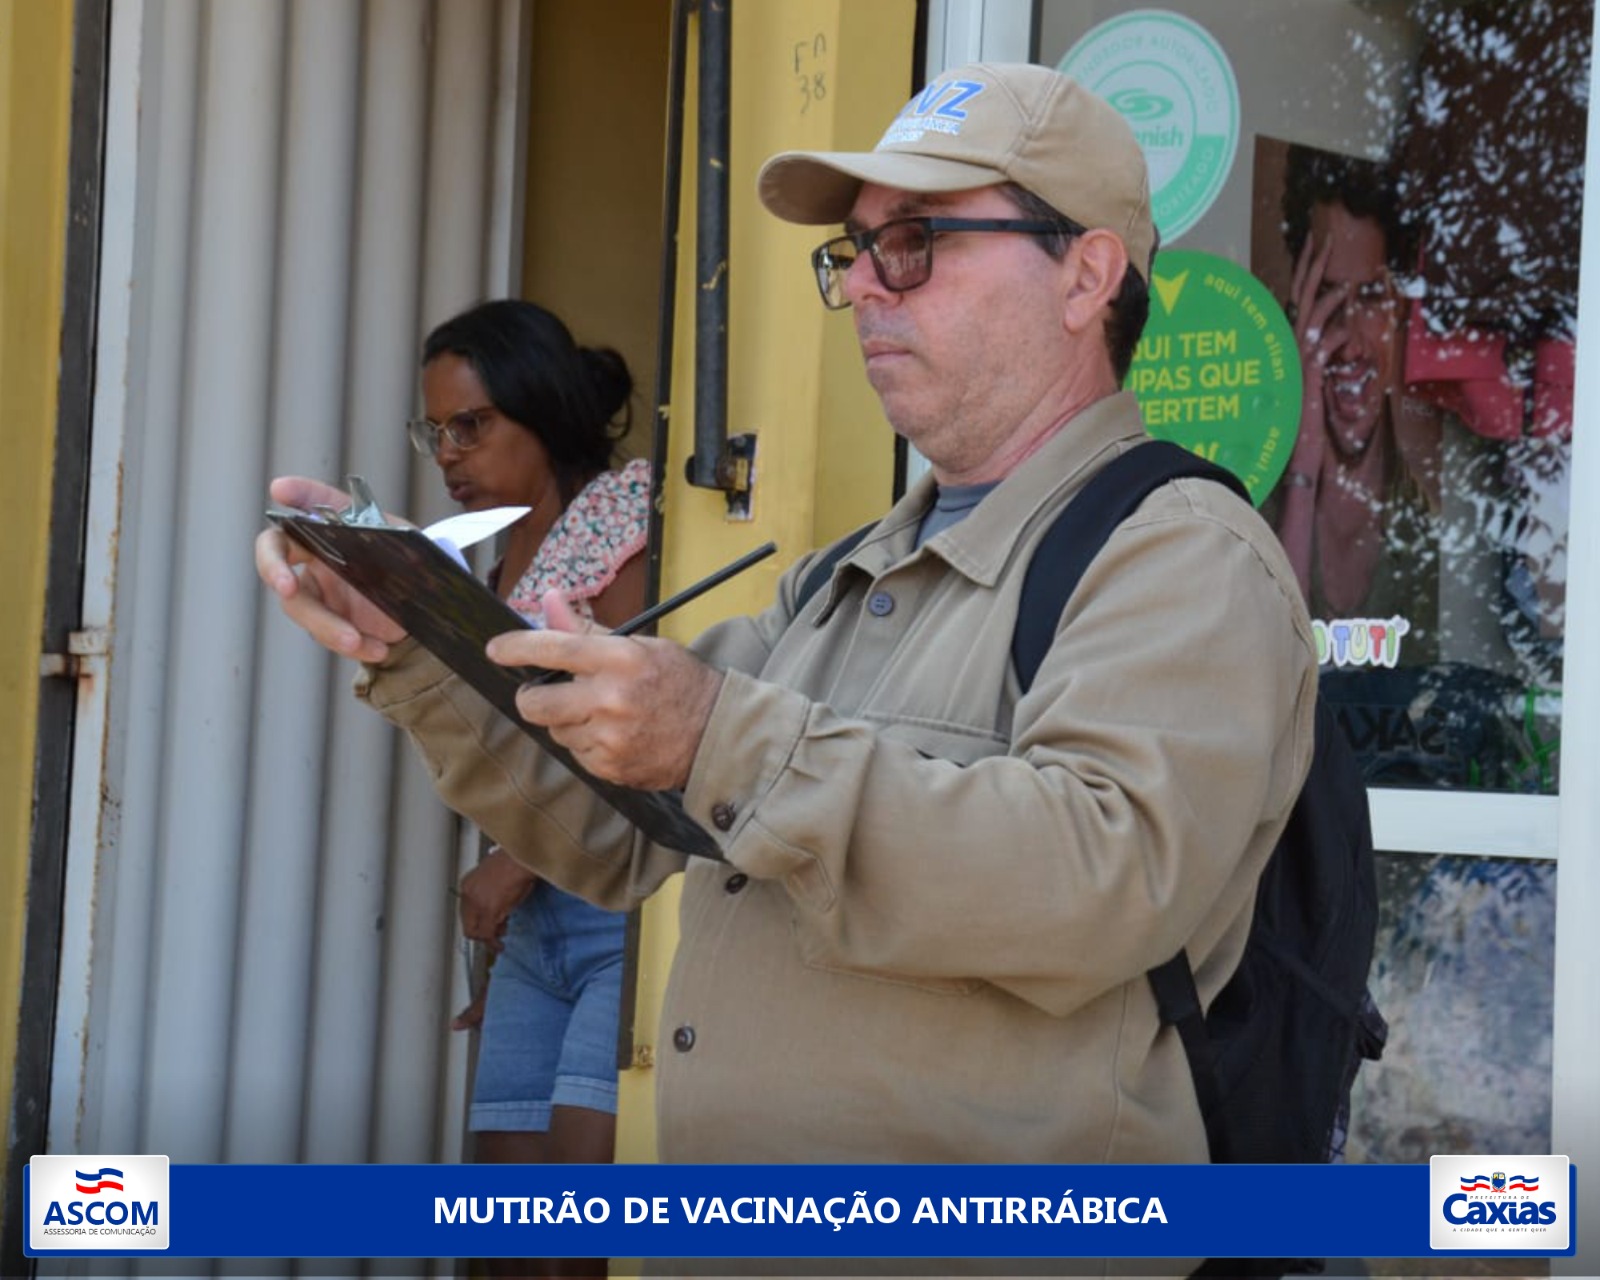 UVZ hat in den Stadtteilen Campo de Belem und Ponte eine Task Force zur Tollwutimpfung ins Leben gerufen